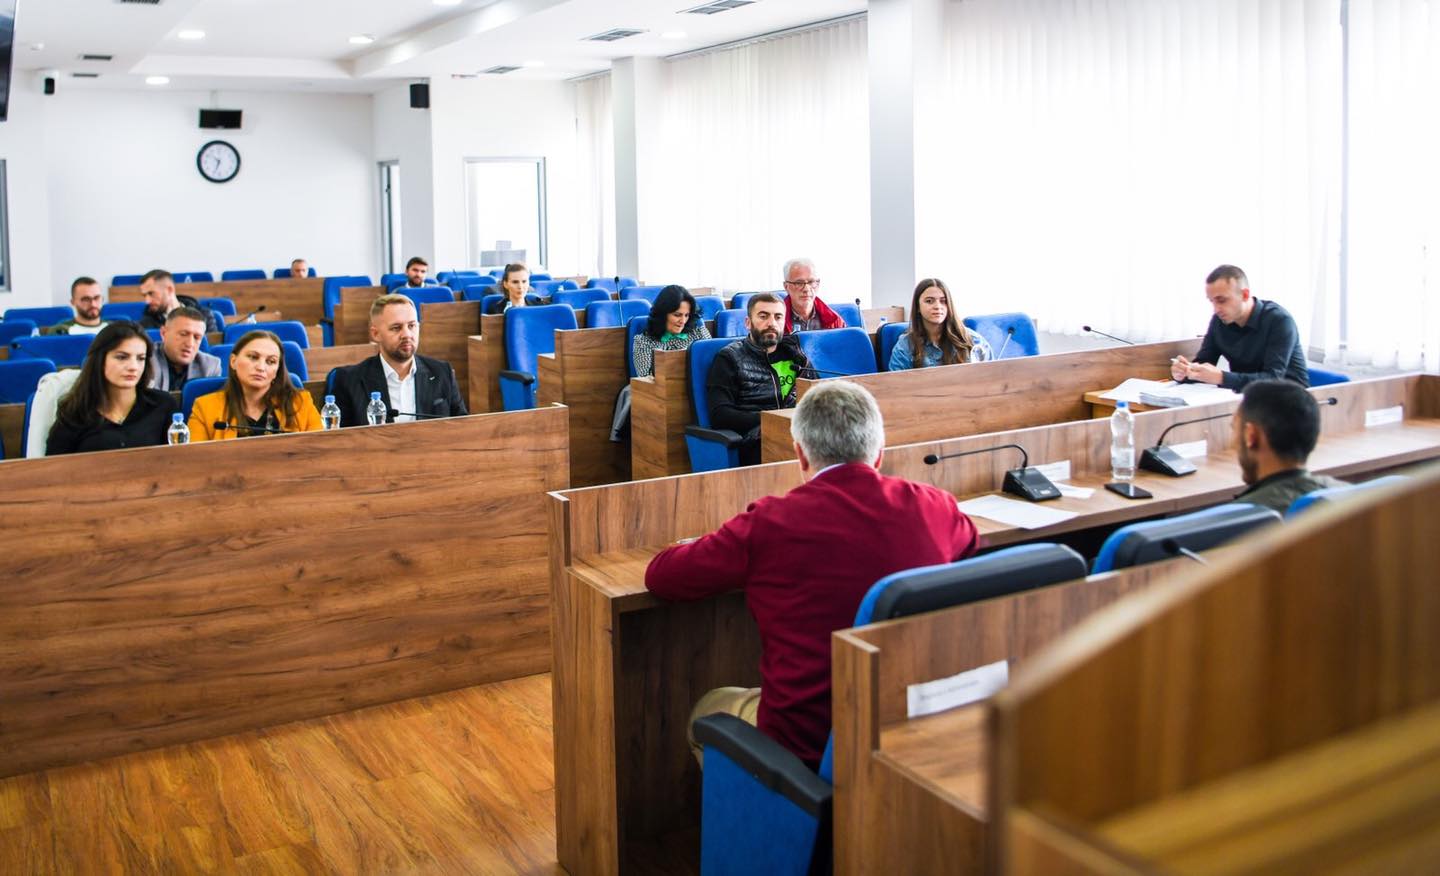  Podujevë: U mbajt mbledhja e Komitetit për Politikë dhe Financa